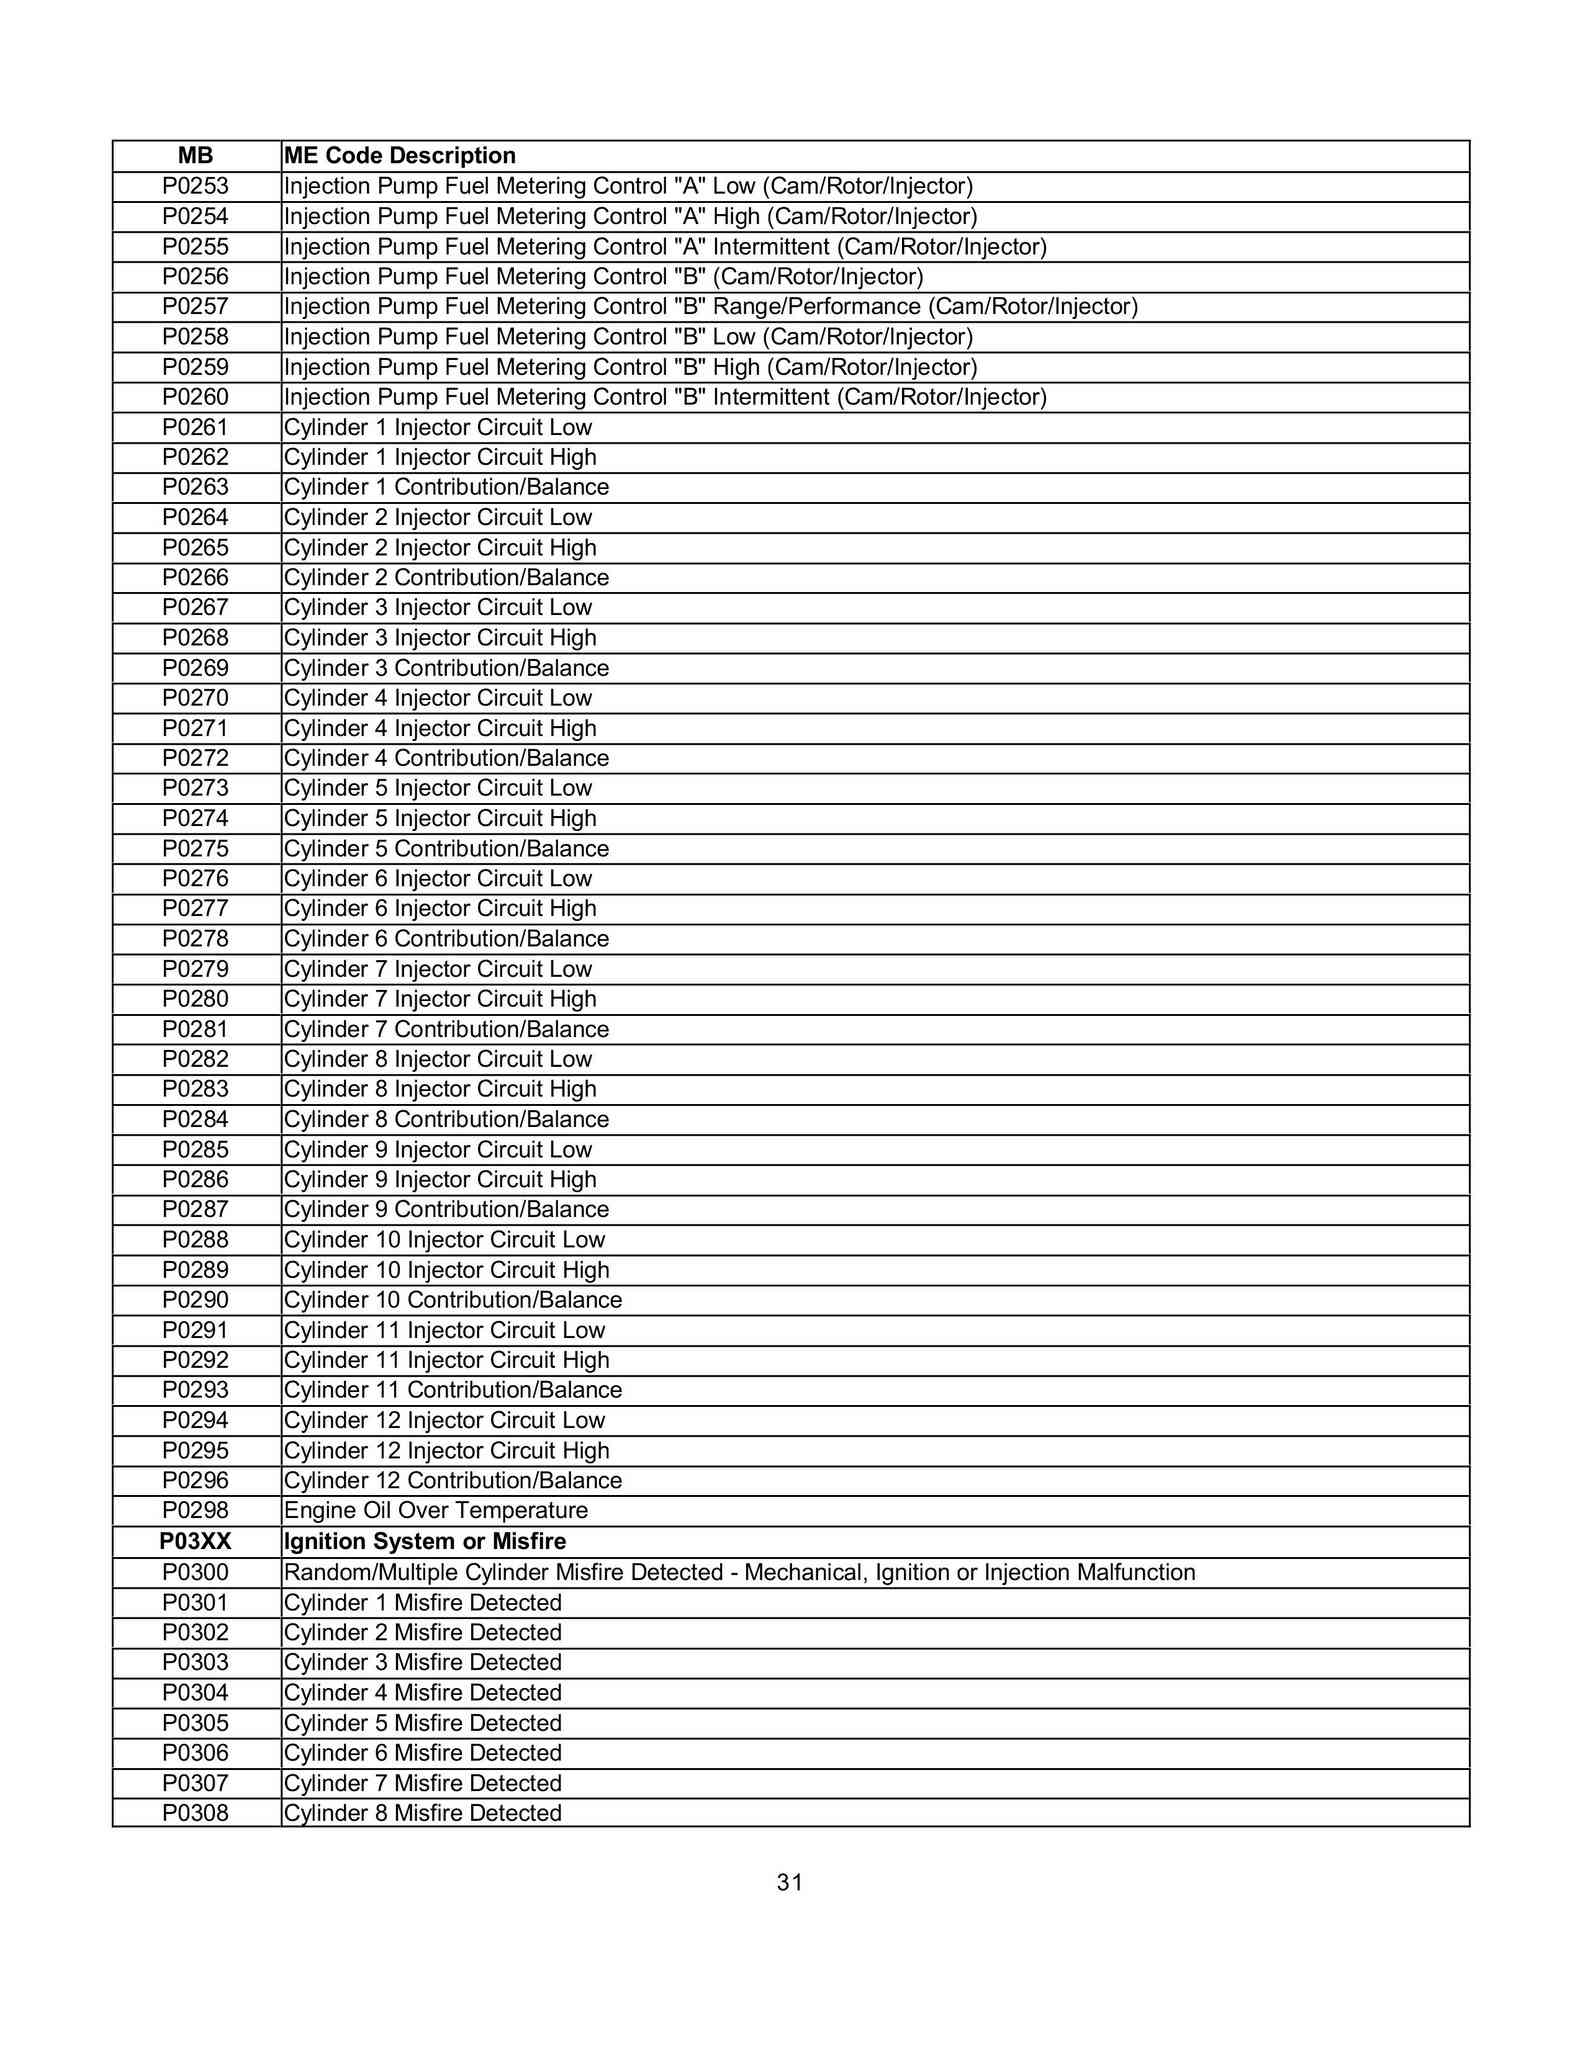 Lista de Códigos de falhas (fault codes) Mercedes-Benz 003112